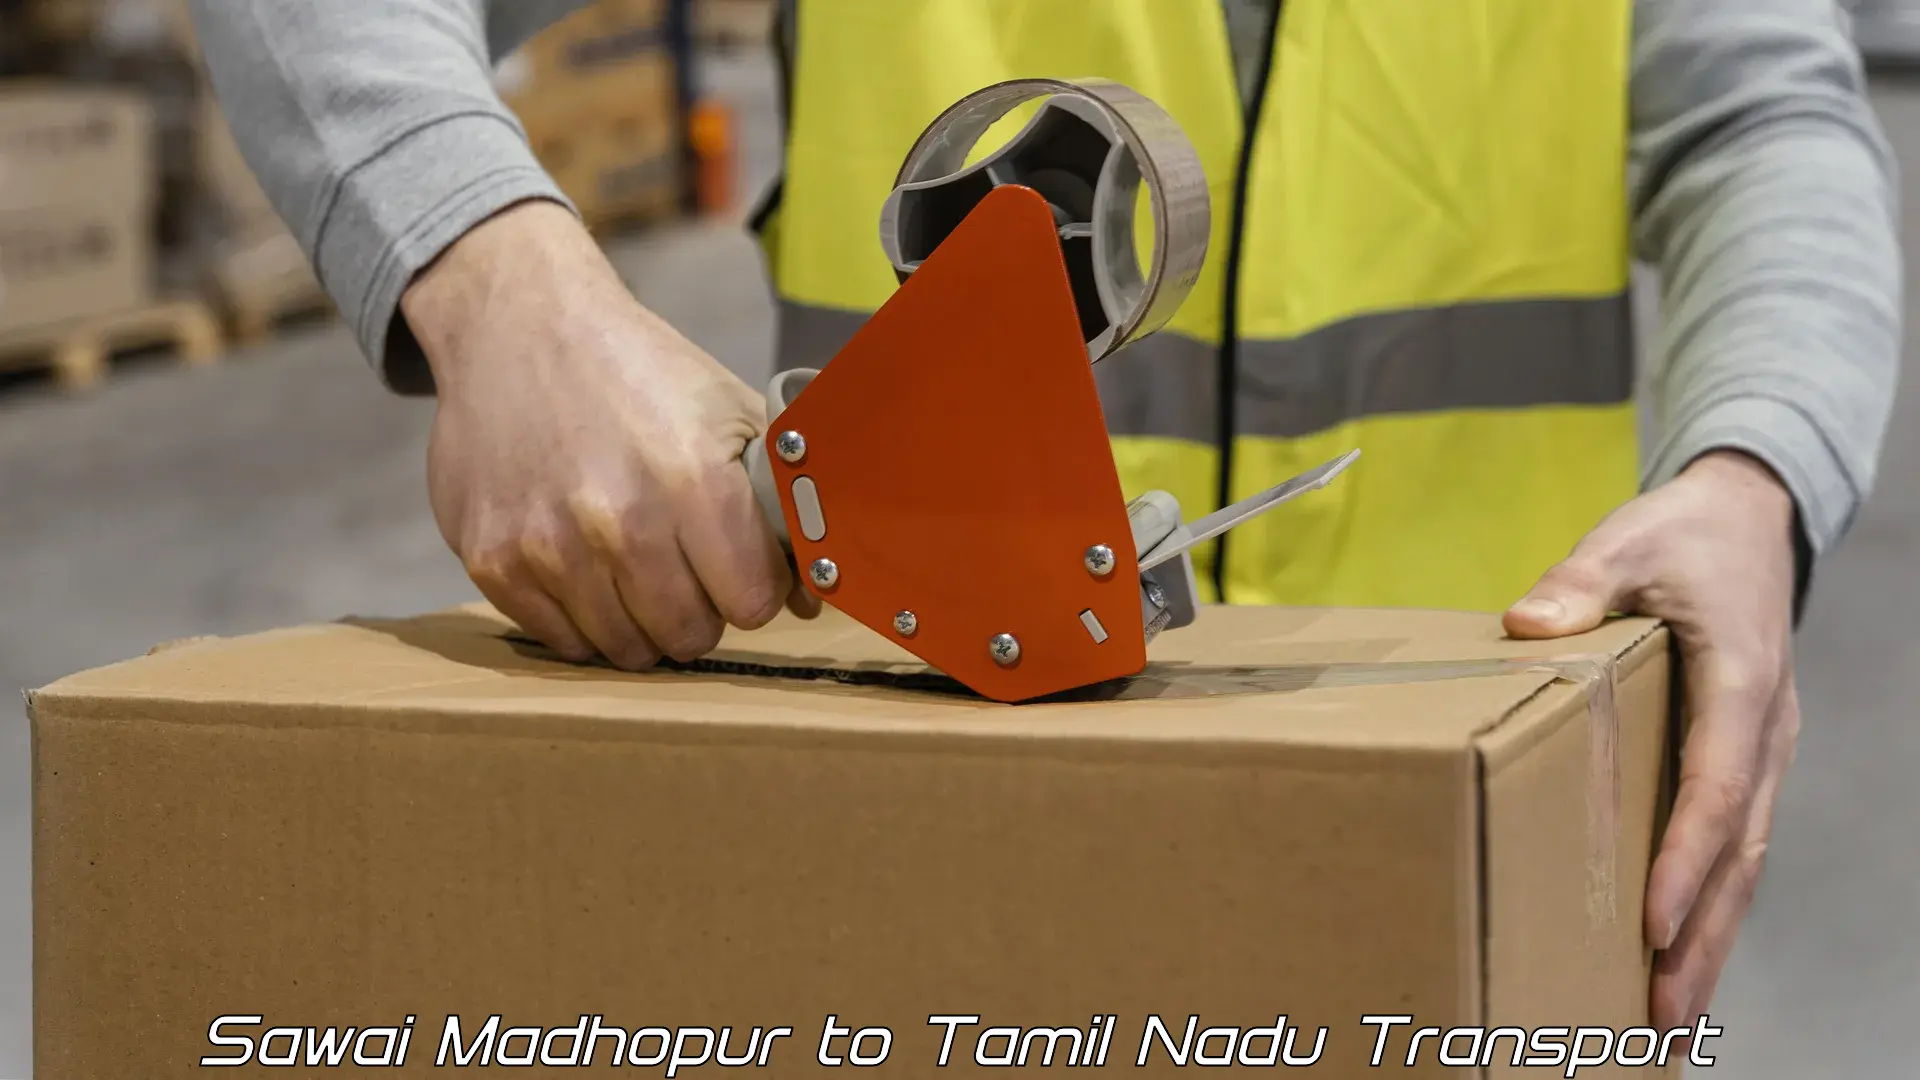 Logistics transportation services Sawai Madhopur to Tamil Nadu